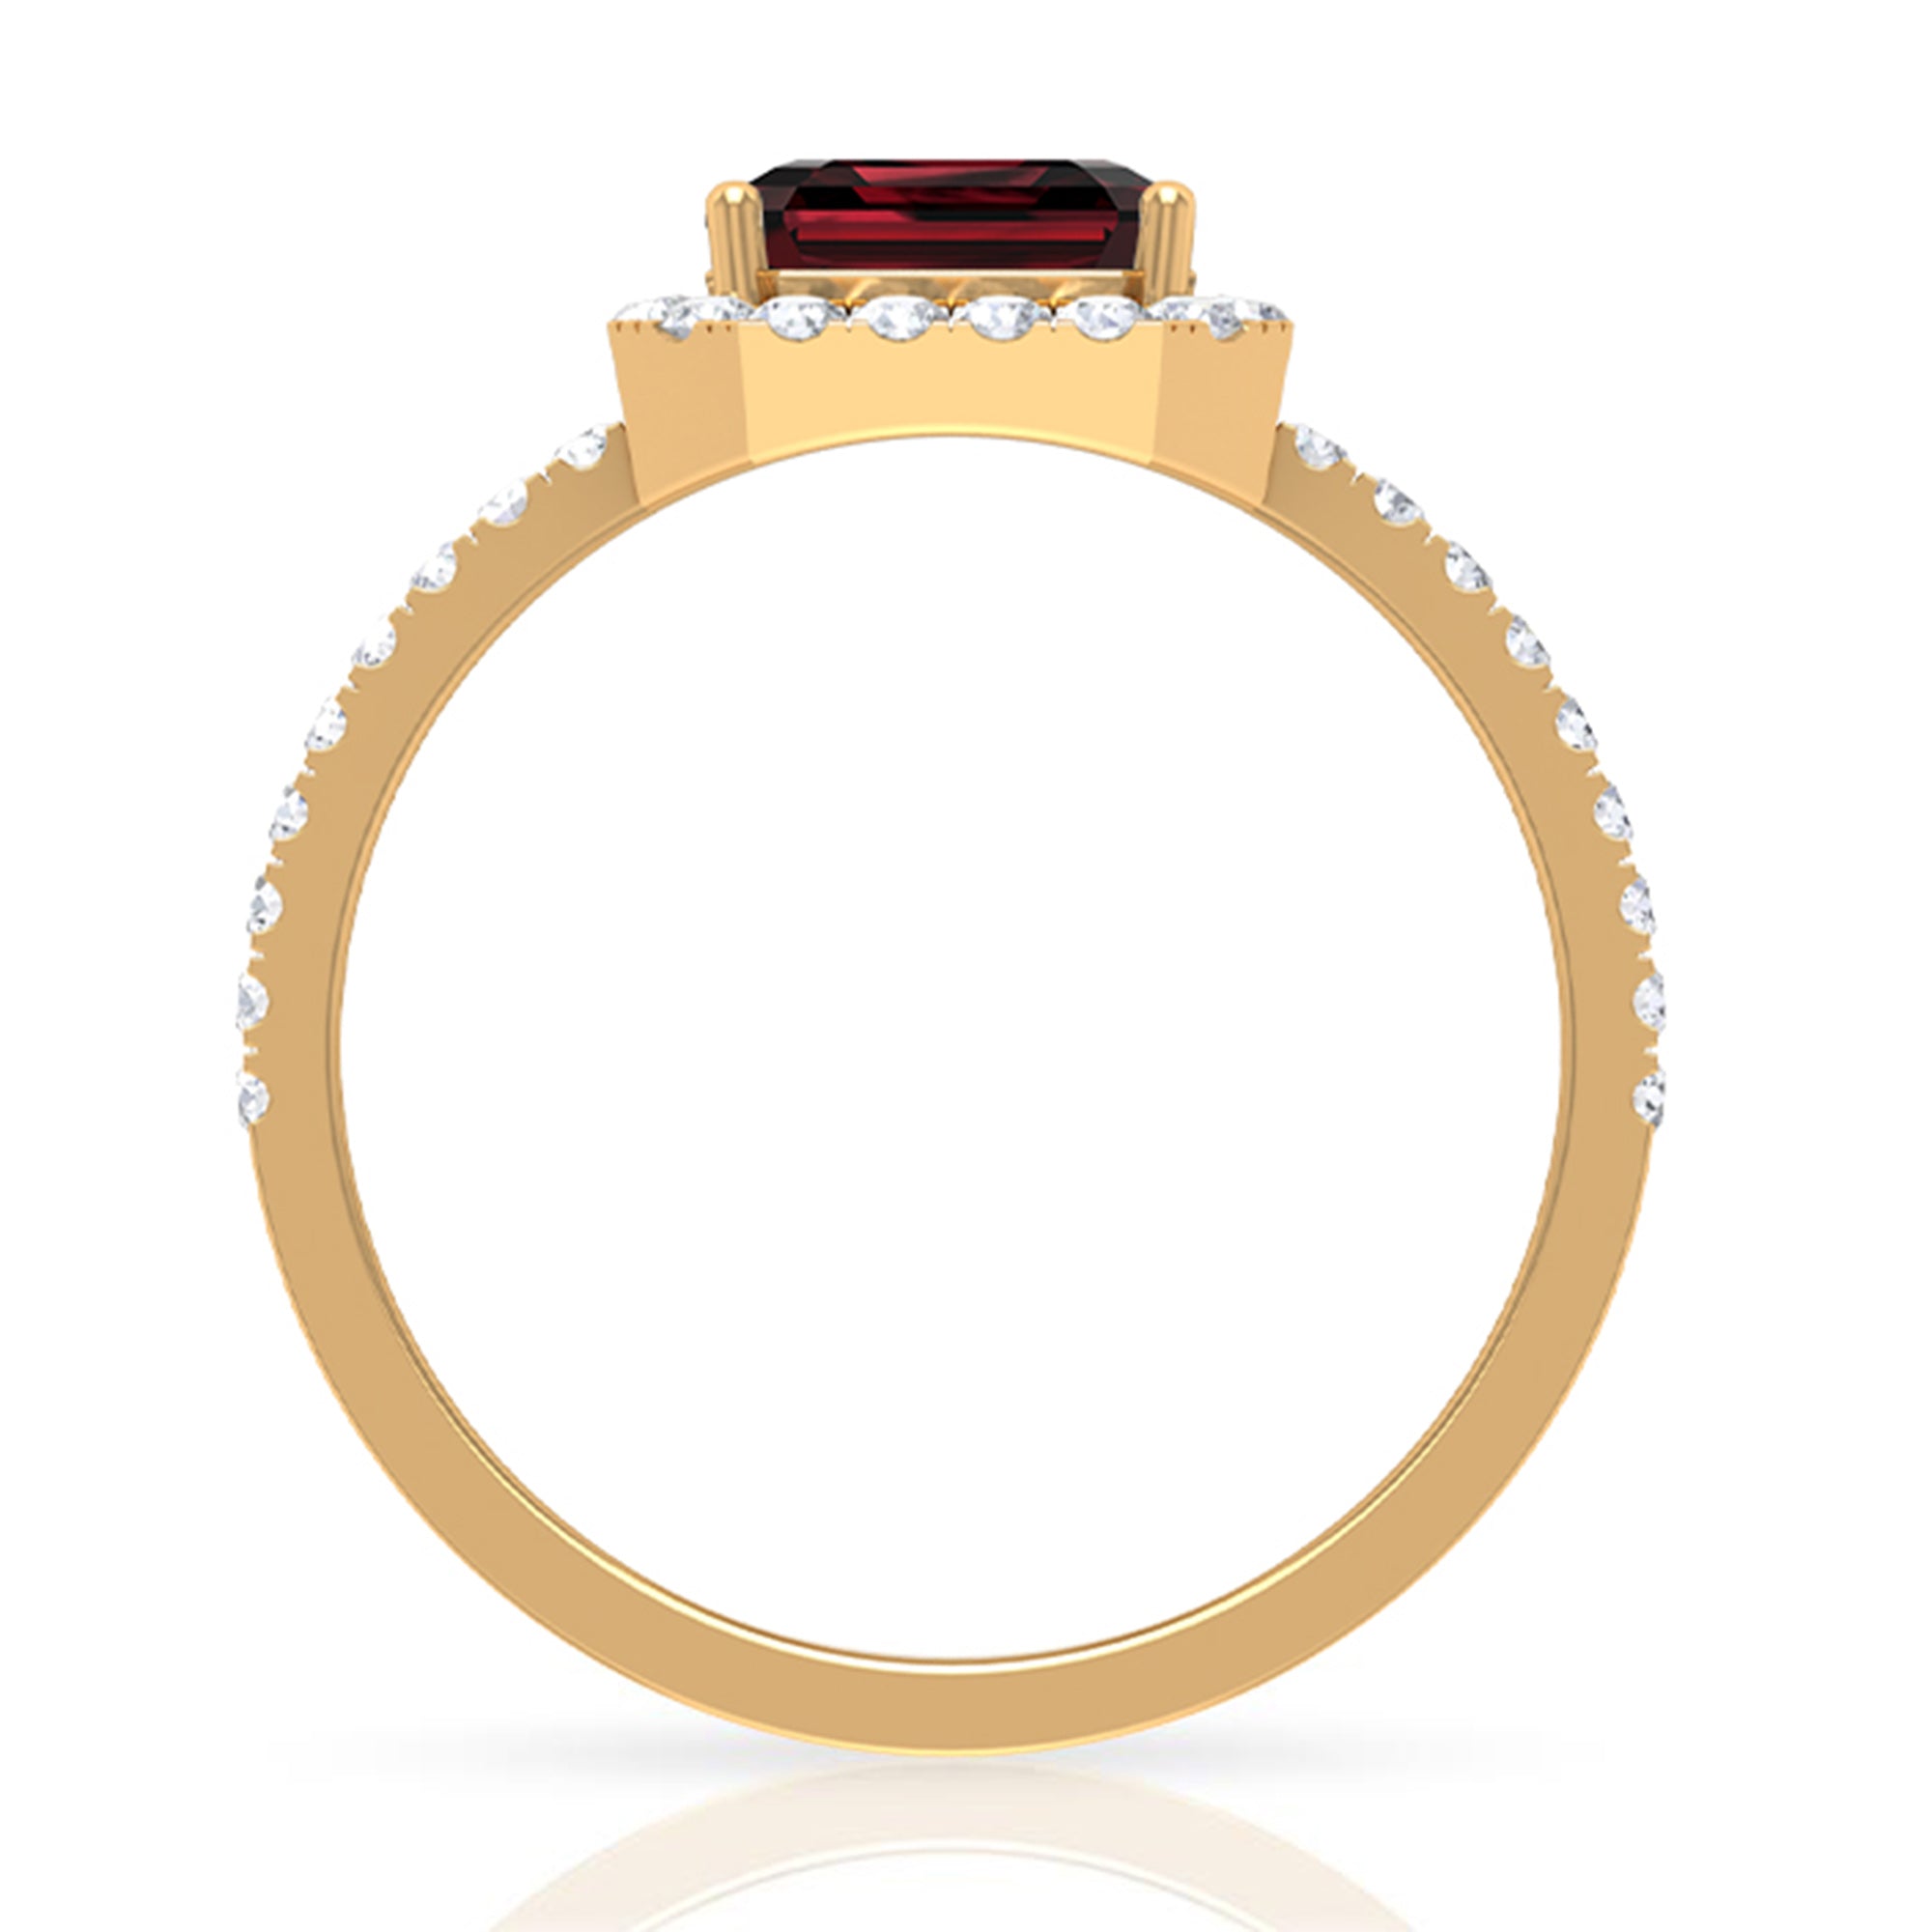 Asscher Cut Garnet Halo Engagement Ring with Diamond Garnet - ( AAA ) - Quality - Rosec Jewels